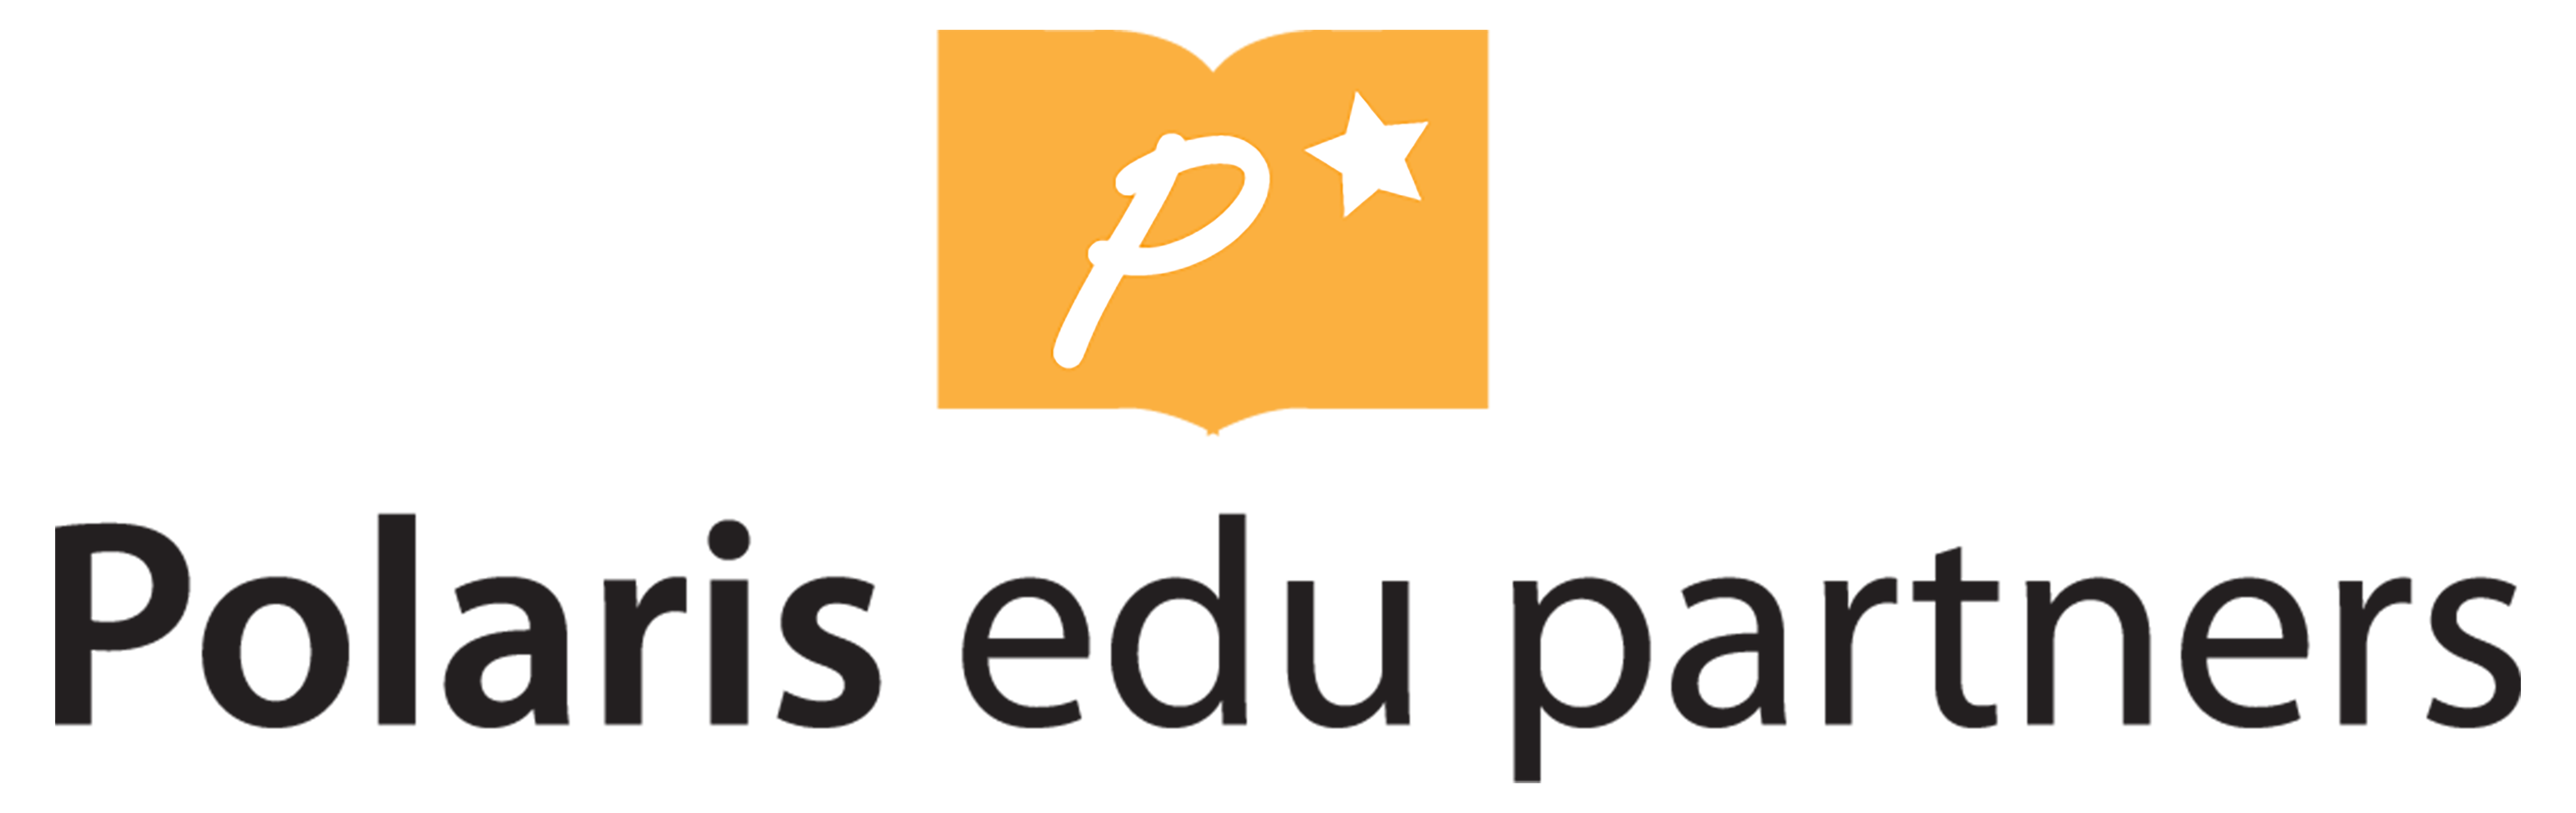 logo-polaris.png